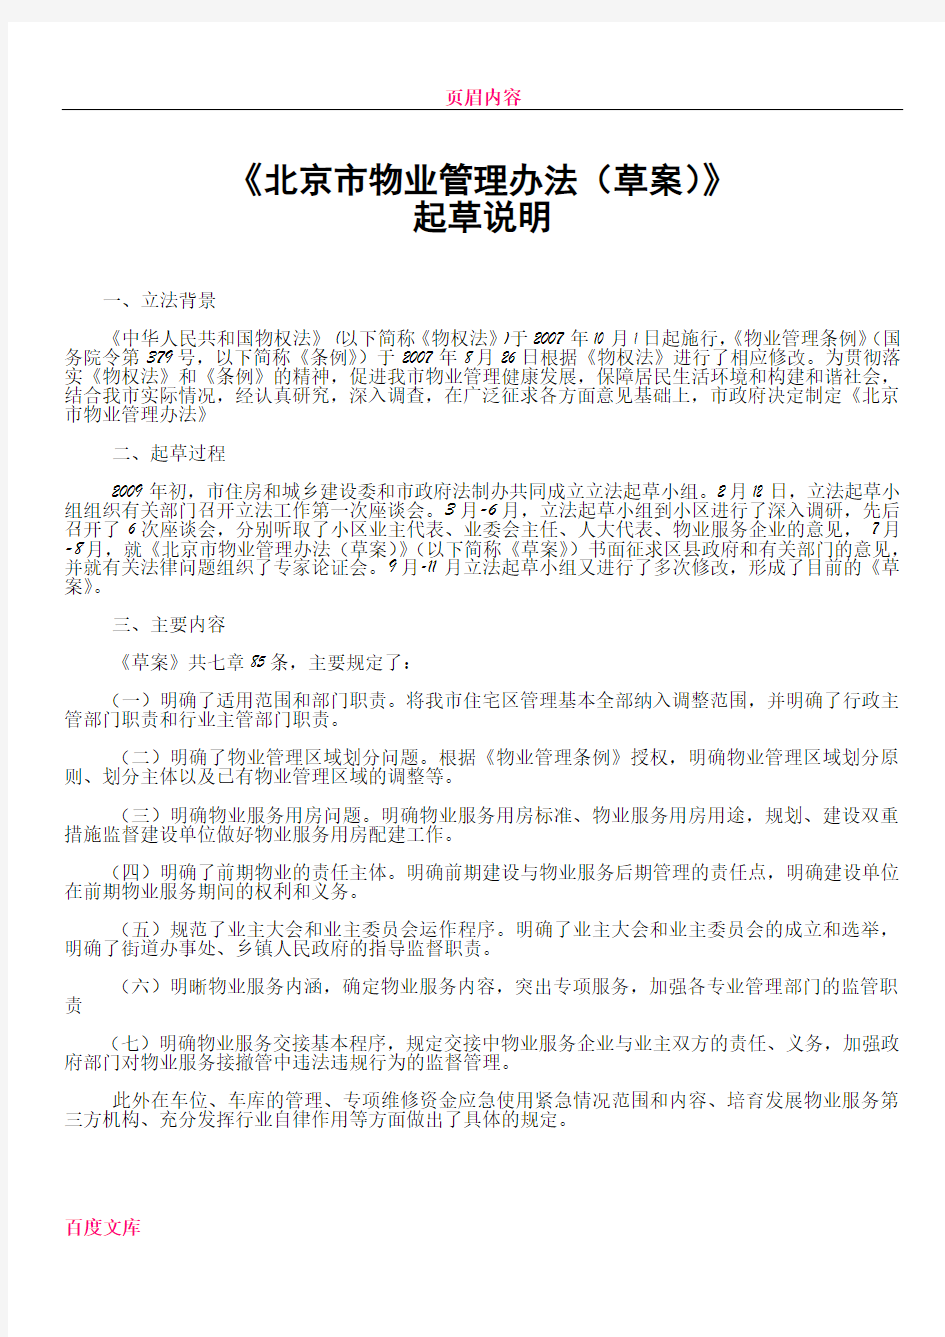 《北京市物业管理办法(草案)》起草说明及办法附件